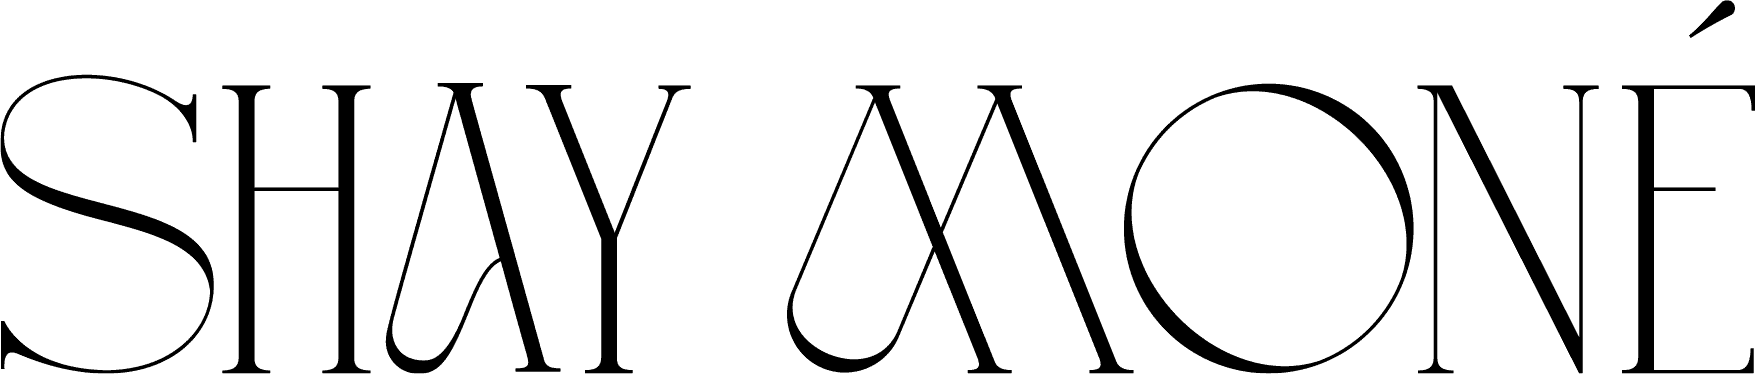 small shay mone logo